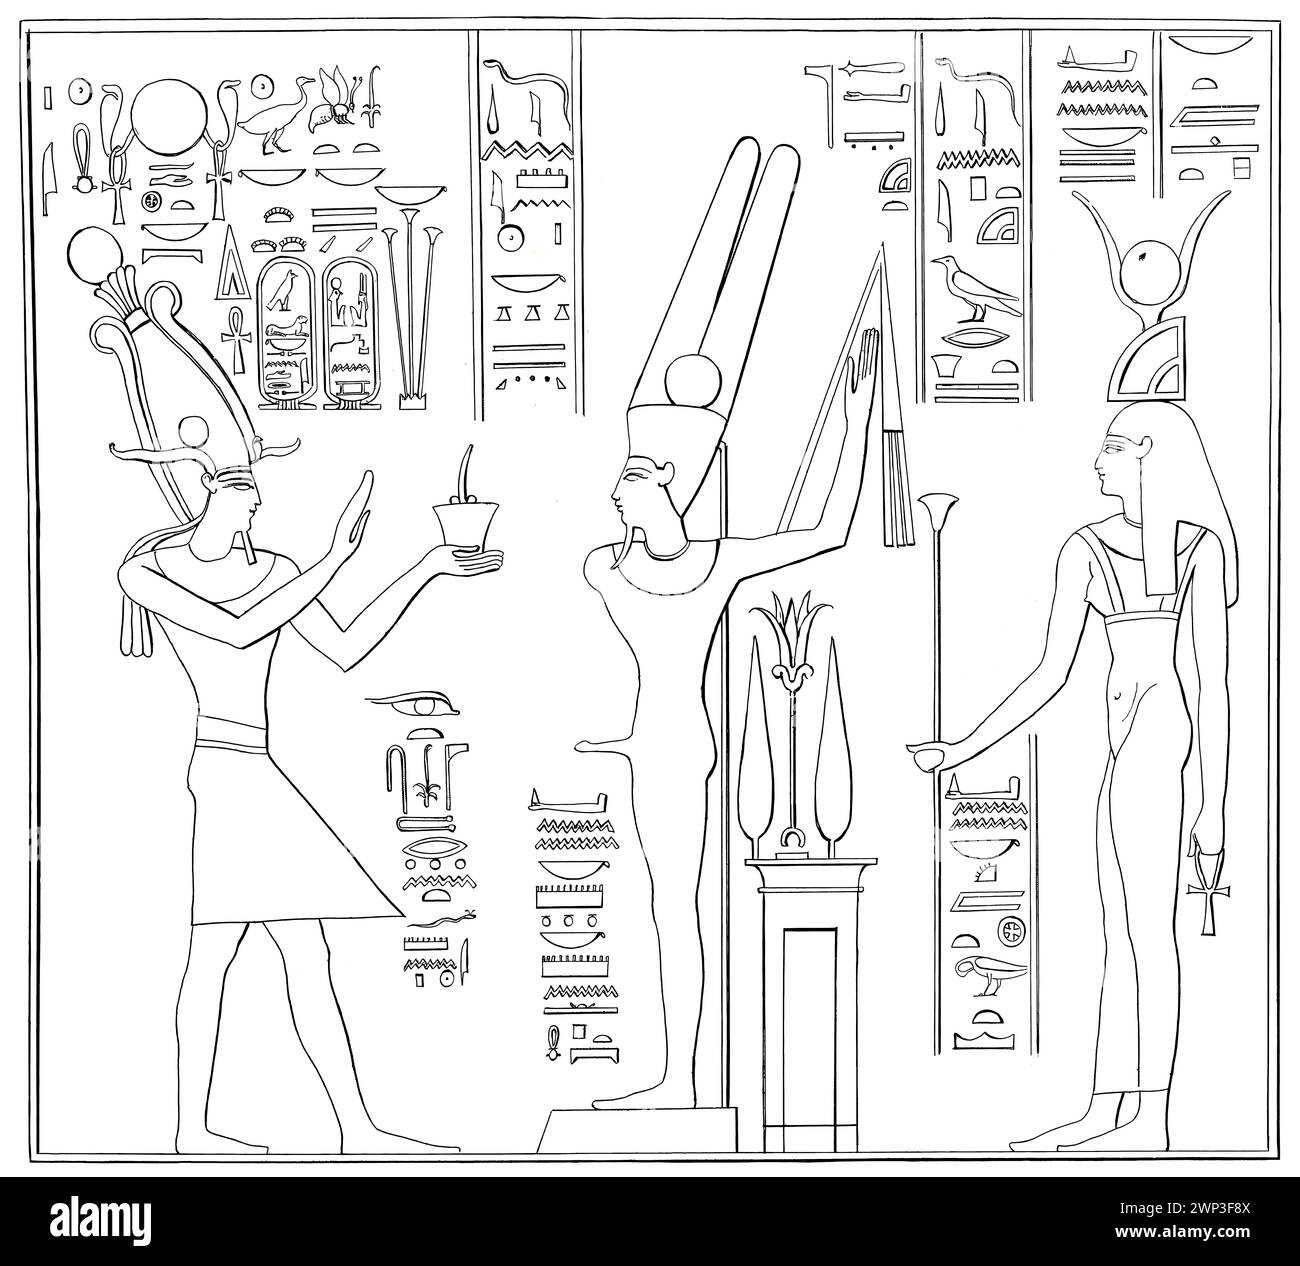 Alexander der große opferte Amun-Re und der Göttin Hathor, dem Tempel von Luxor Stockfoto